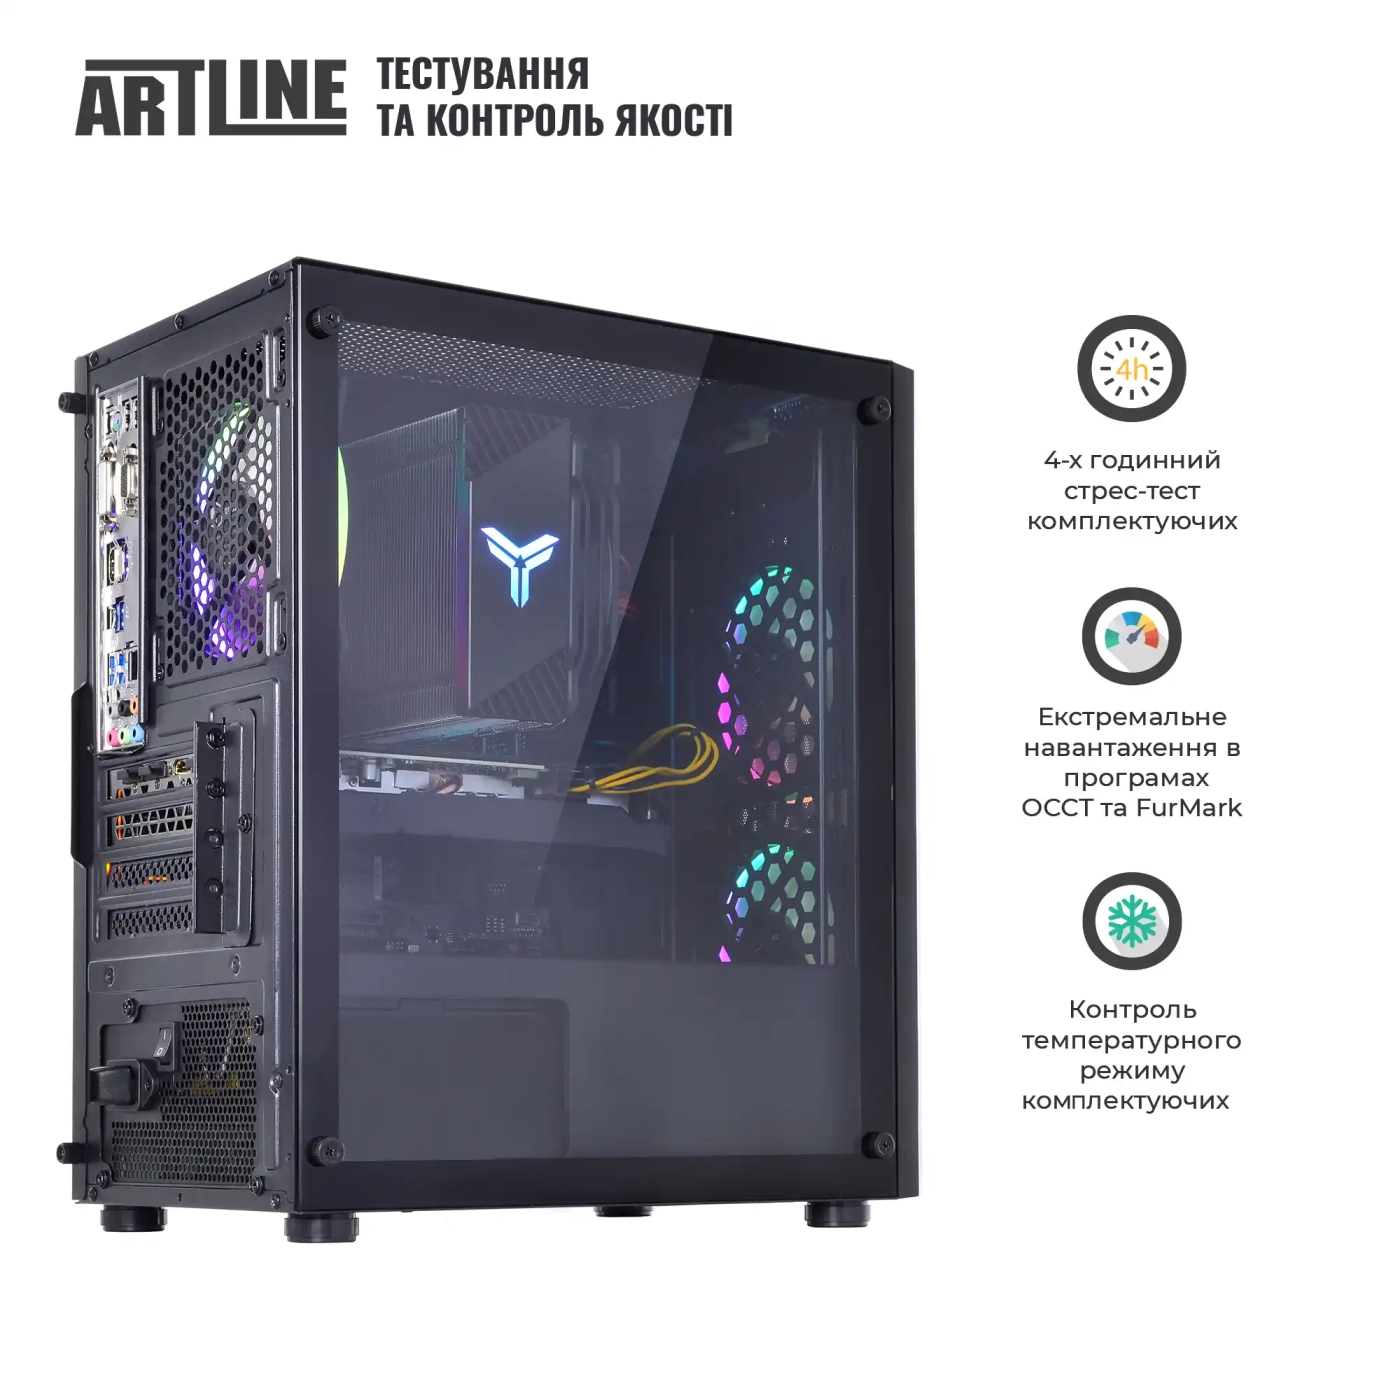 Купить Компьютер ARTLINE Gaming X49v15 - фото 7